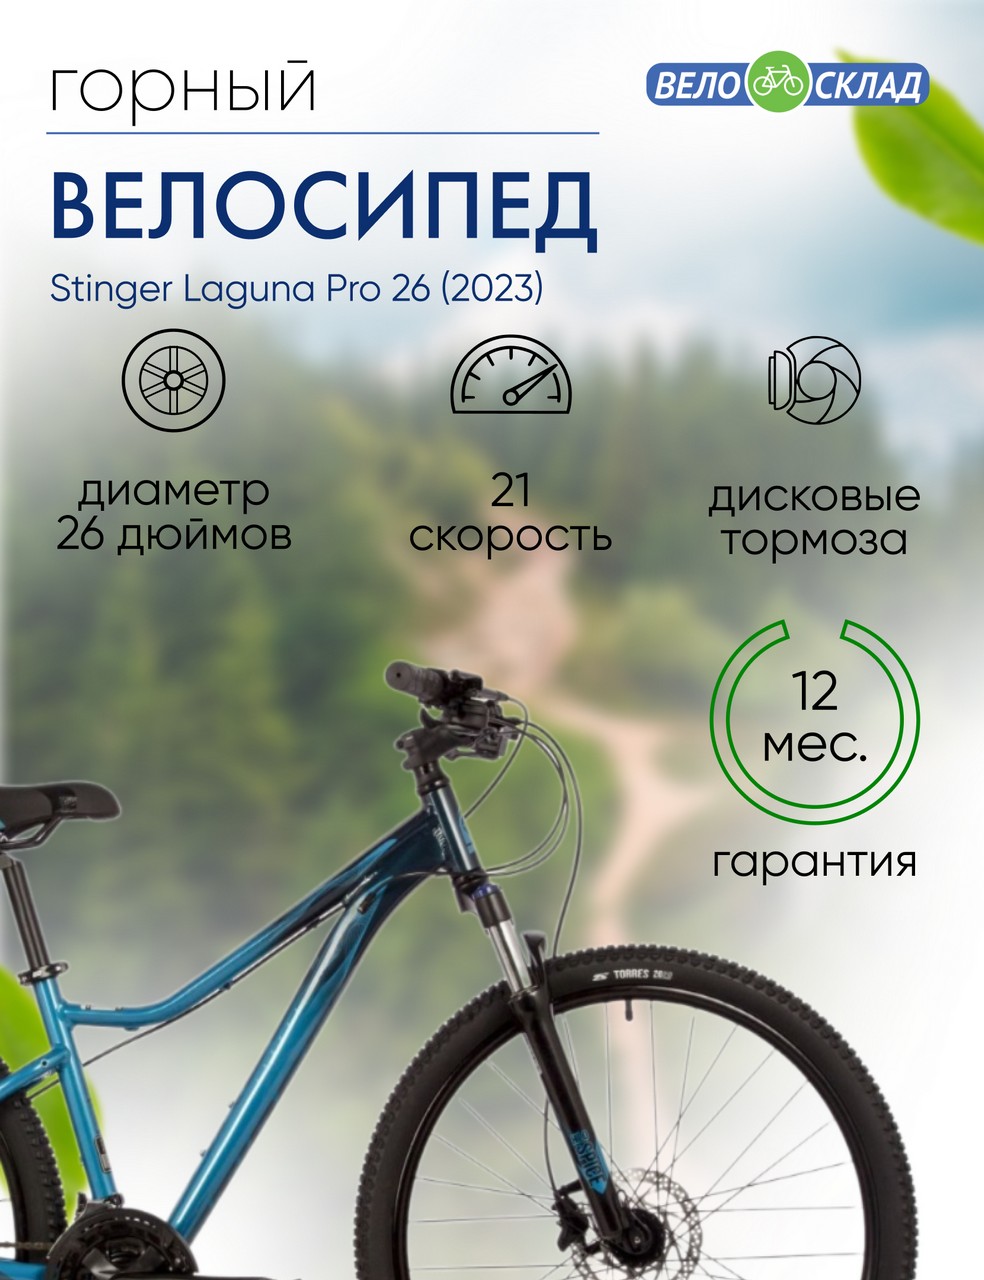 Женский велосипед Stinger Laguna Pro 26, год 2023, цвет Синий, ростовка 15